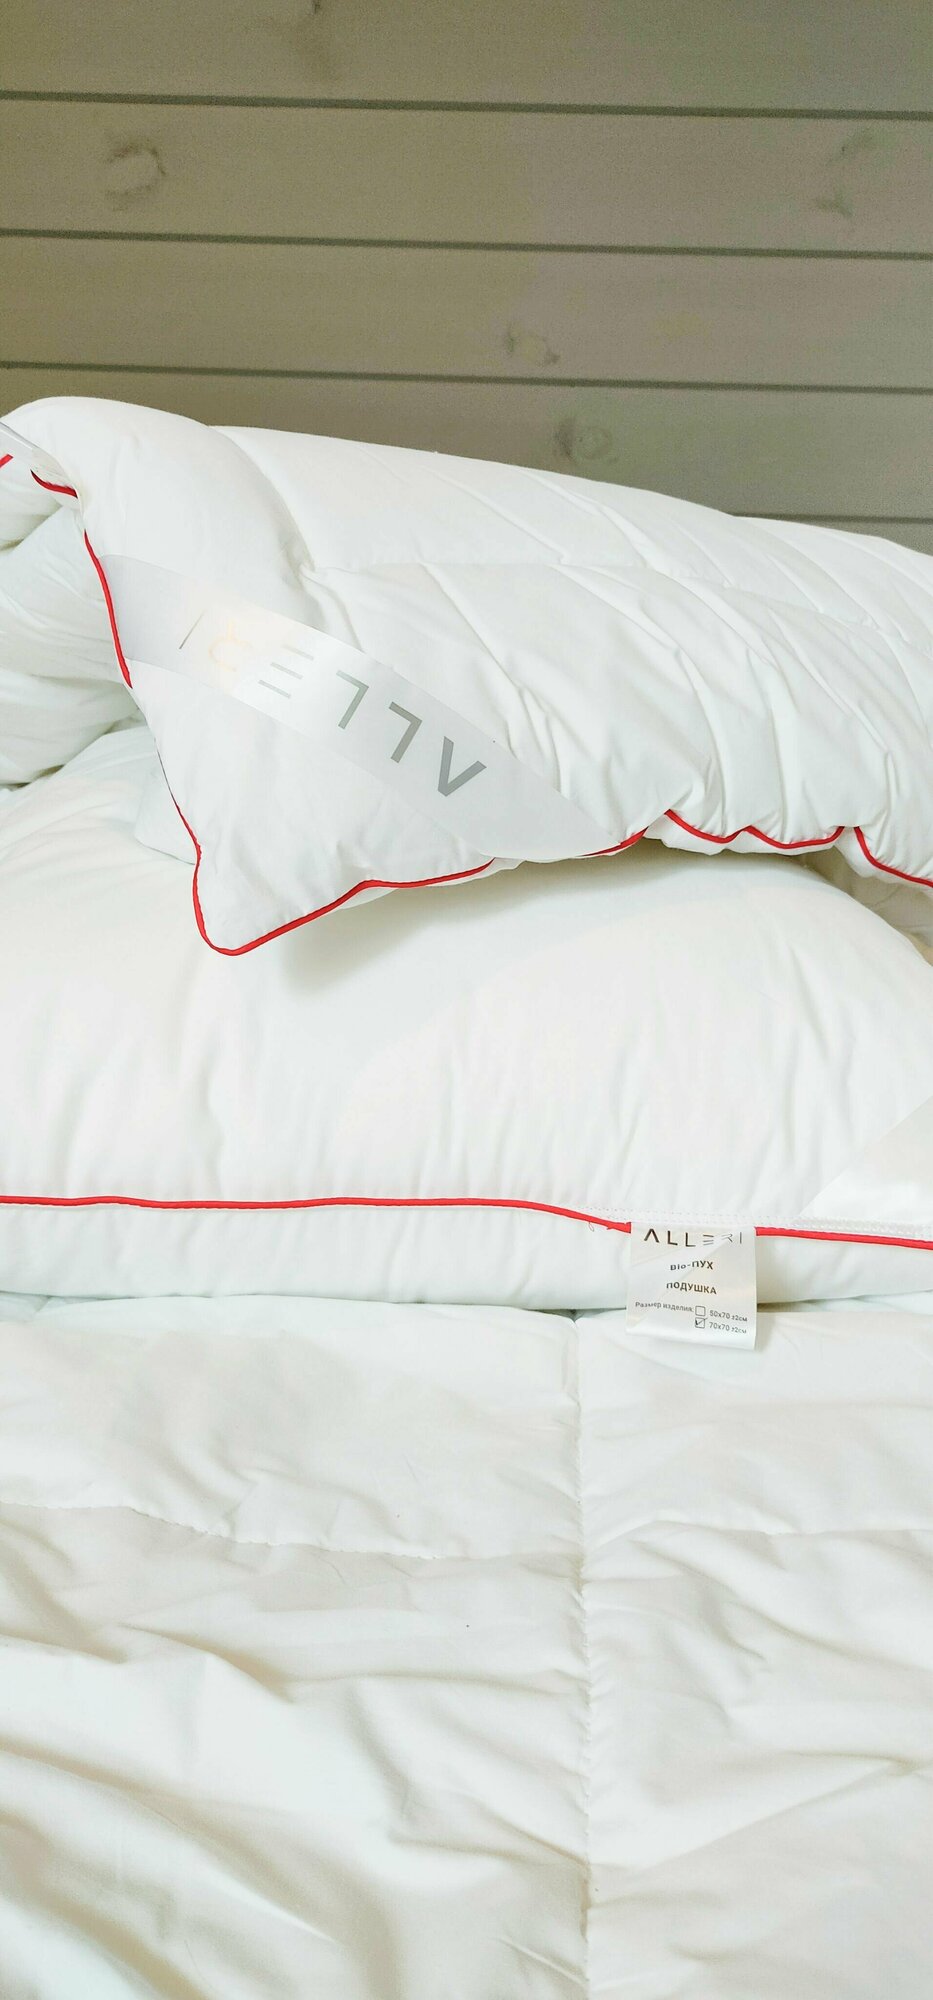 Одеяло 2-x спальное Лёгкое 175x210 см, Всесезонное, с наполнителем Био-пух,Alleri - фотография № 2